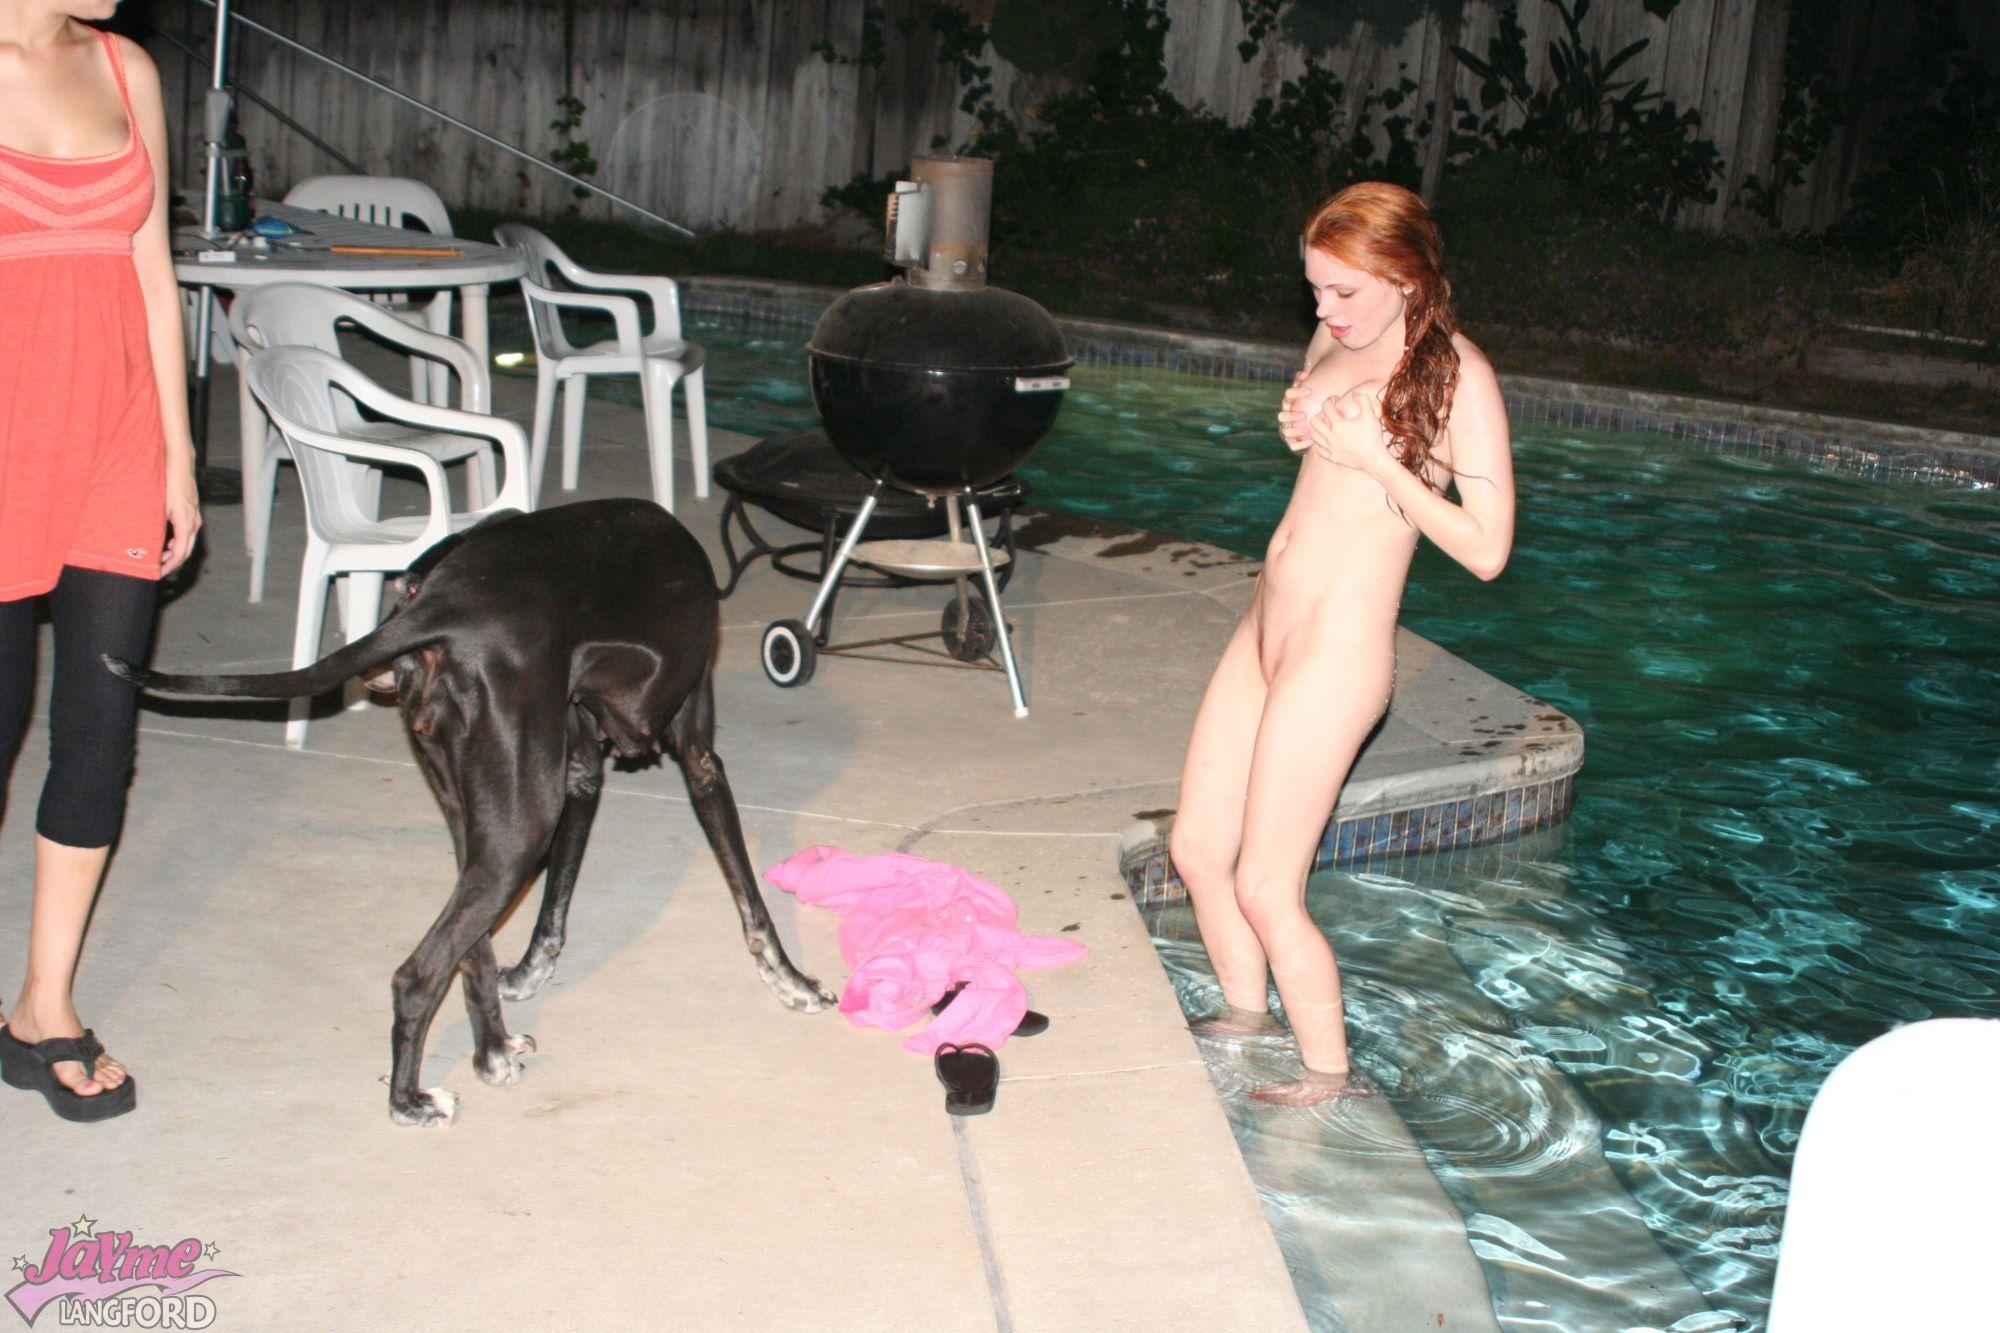 Fotos de jayme langford nadando desnuda
 #55216060